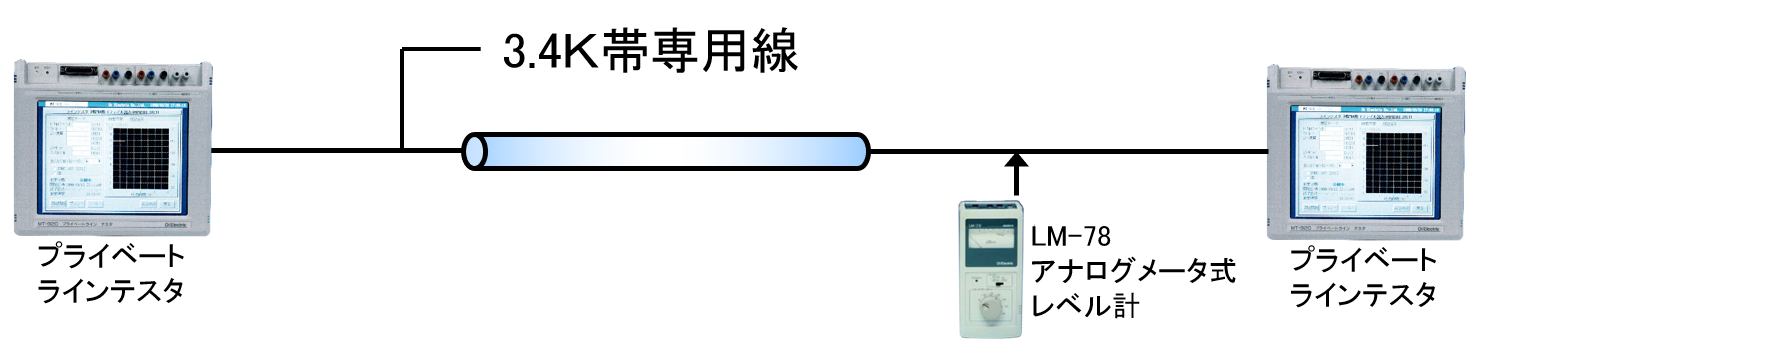 アナログメータ式レベル計